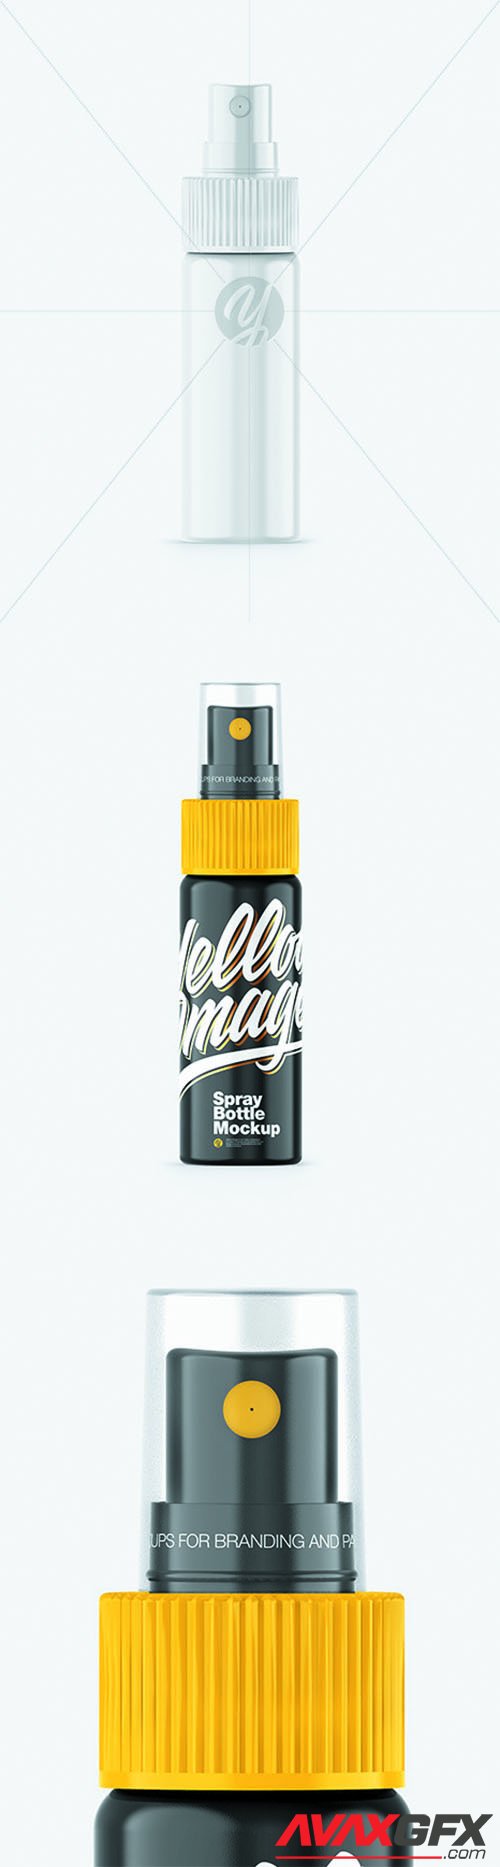 Glossy Spray Bottle Mockup 65917